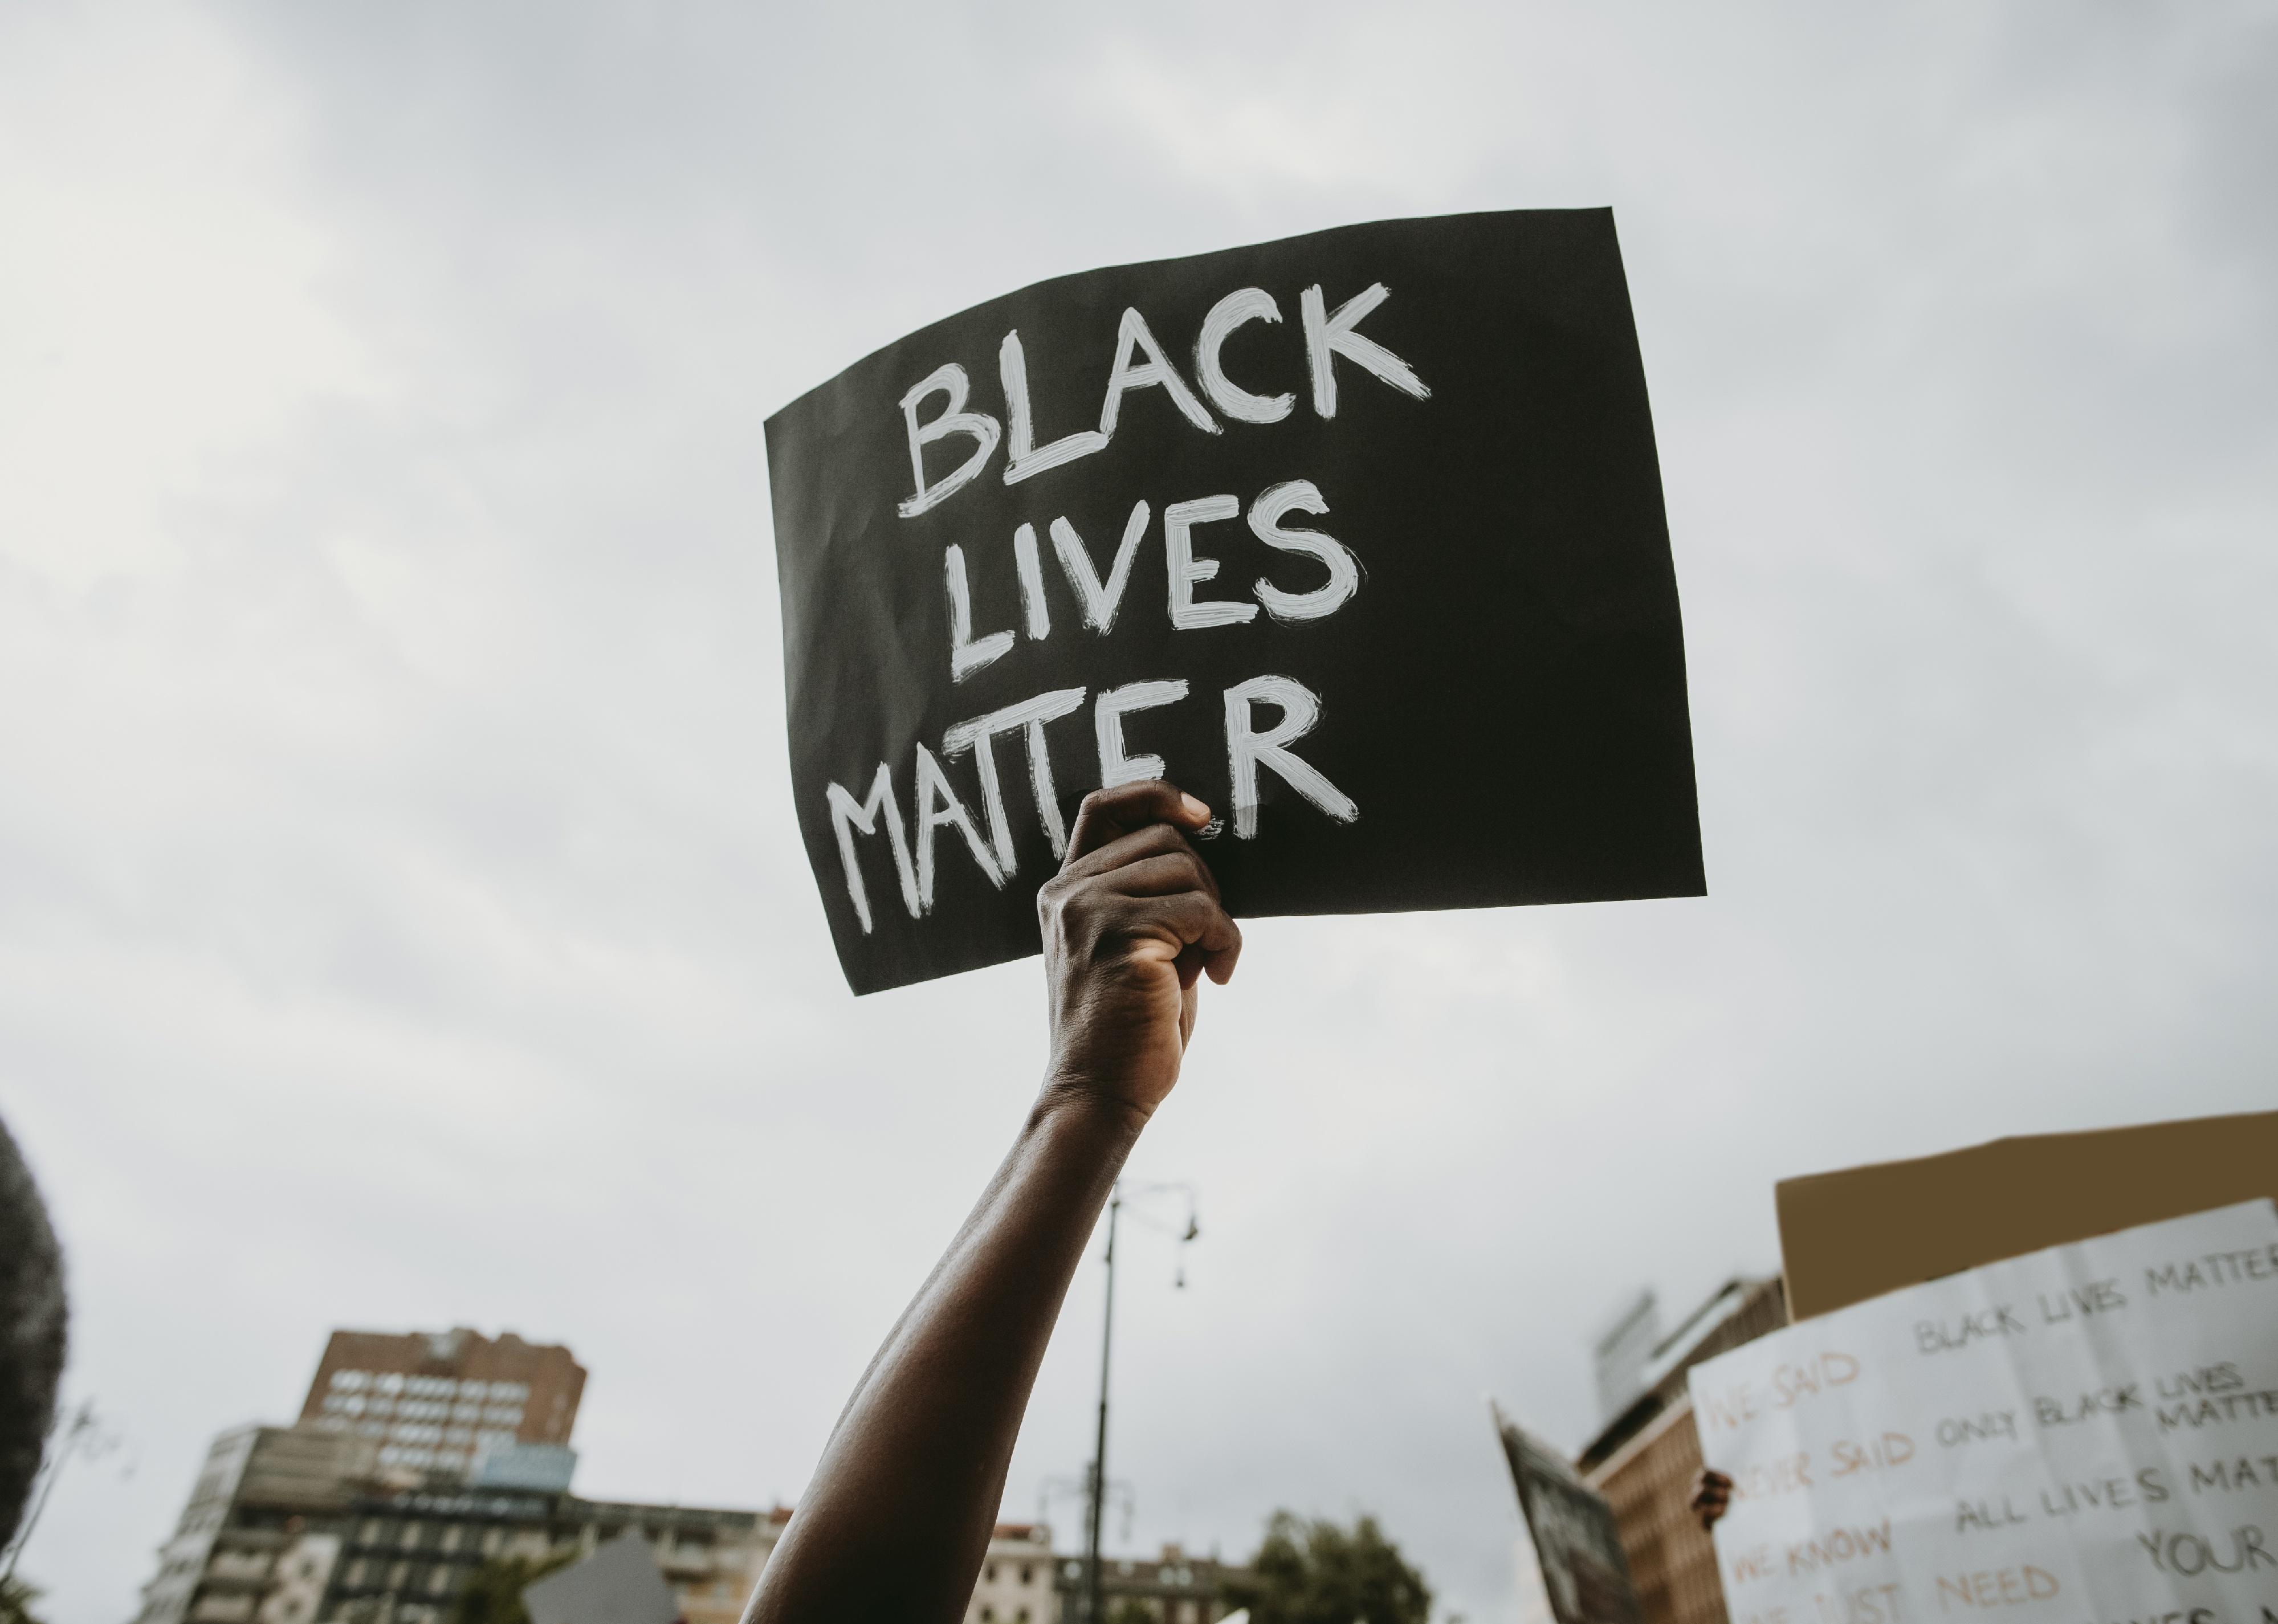 Black lives matter movement protest sign.